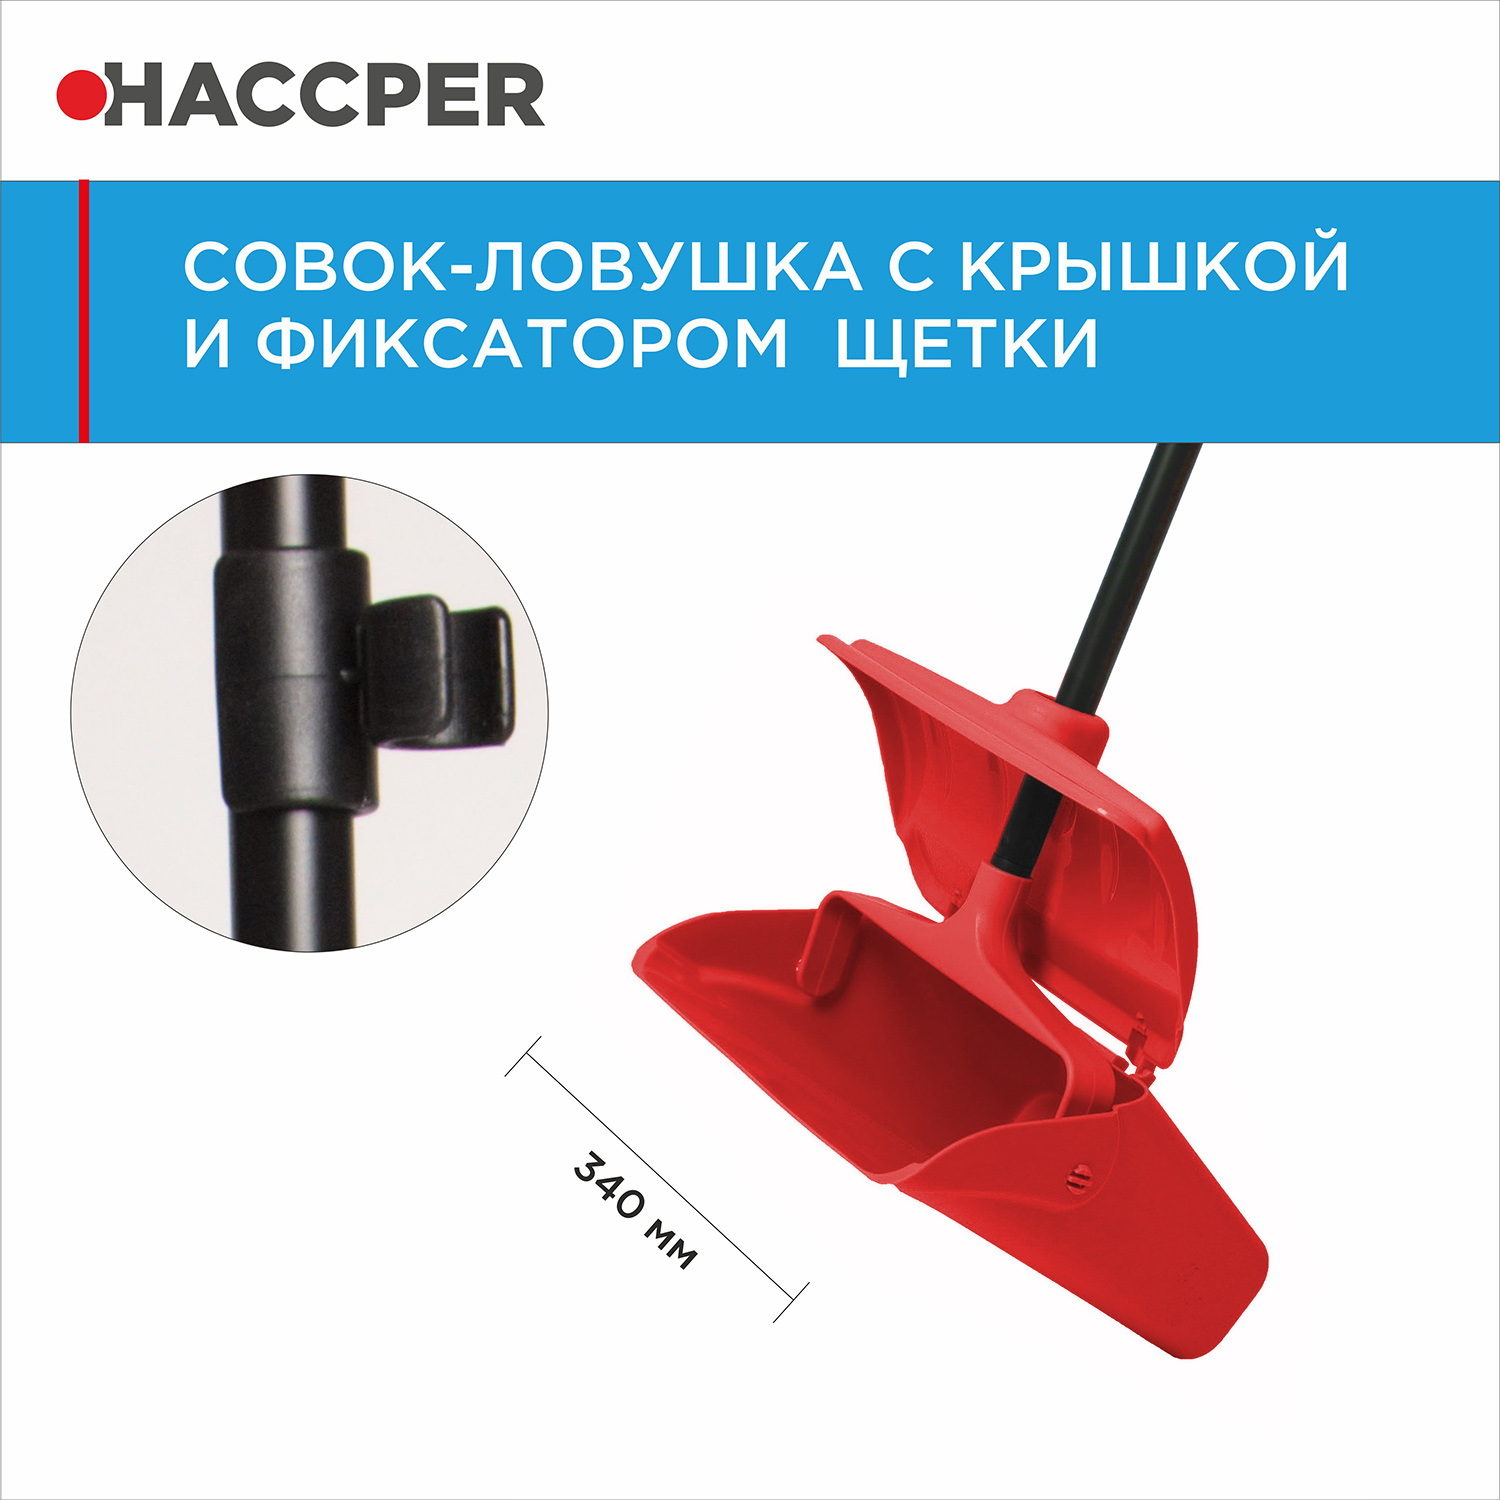 Совок-ловушка HACCPER с крышкой и фиксатором щетки, красный